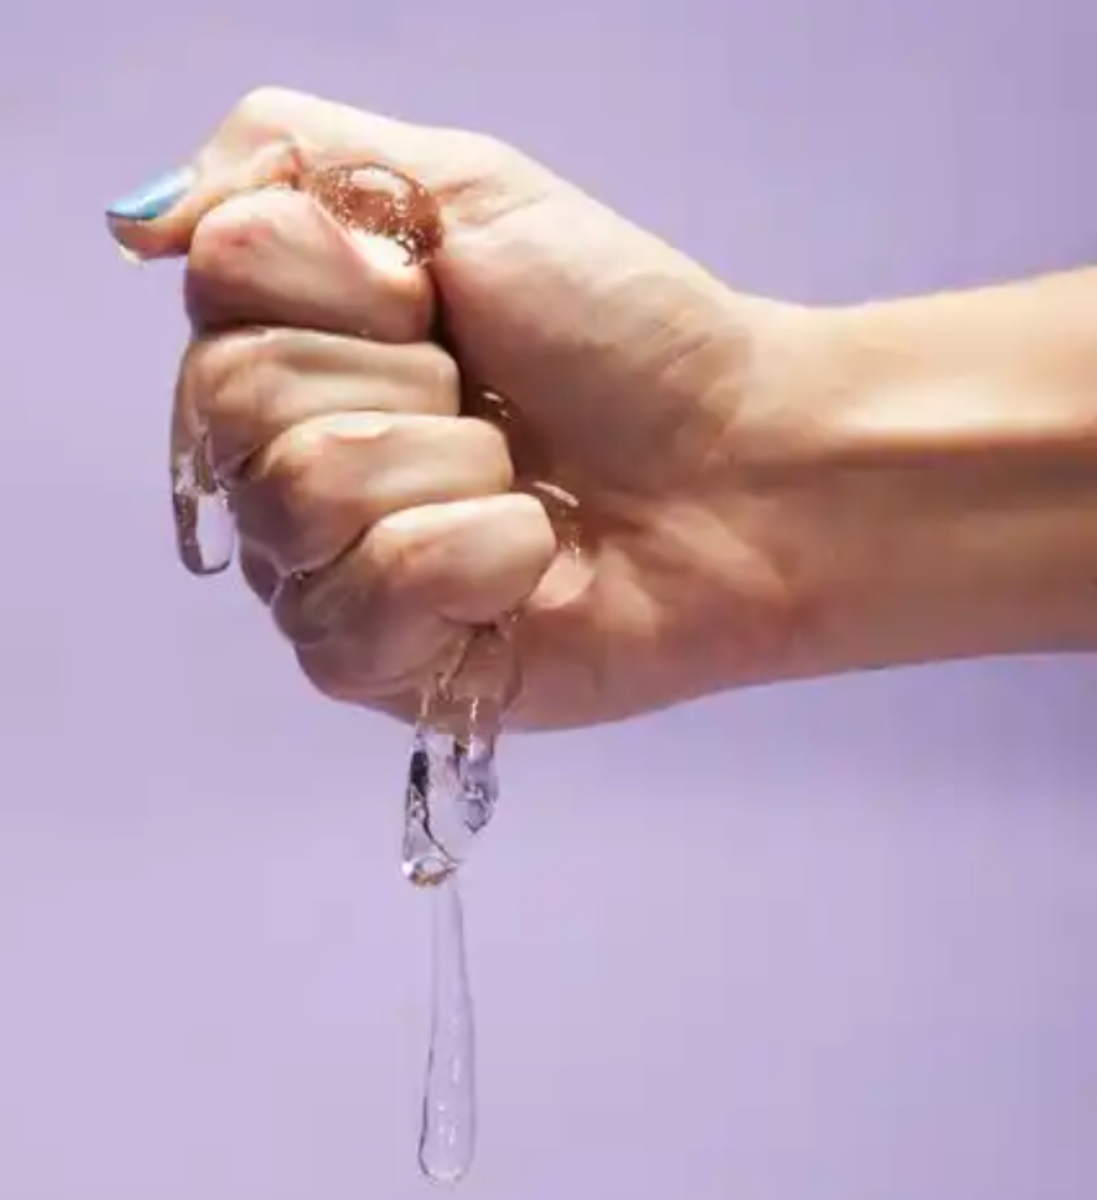 Hand holding lubrication liquid 